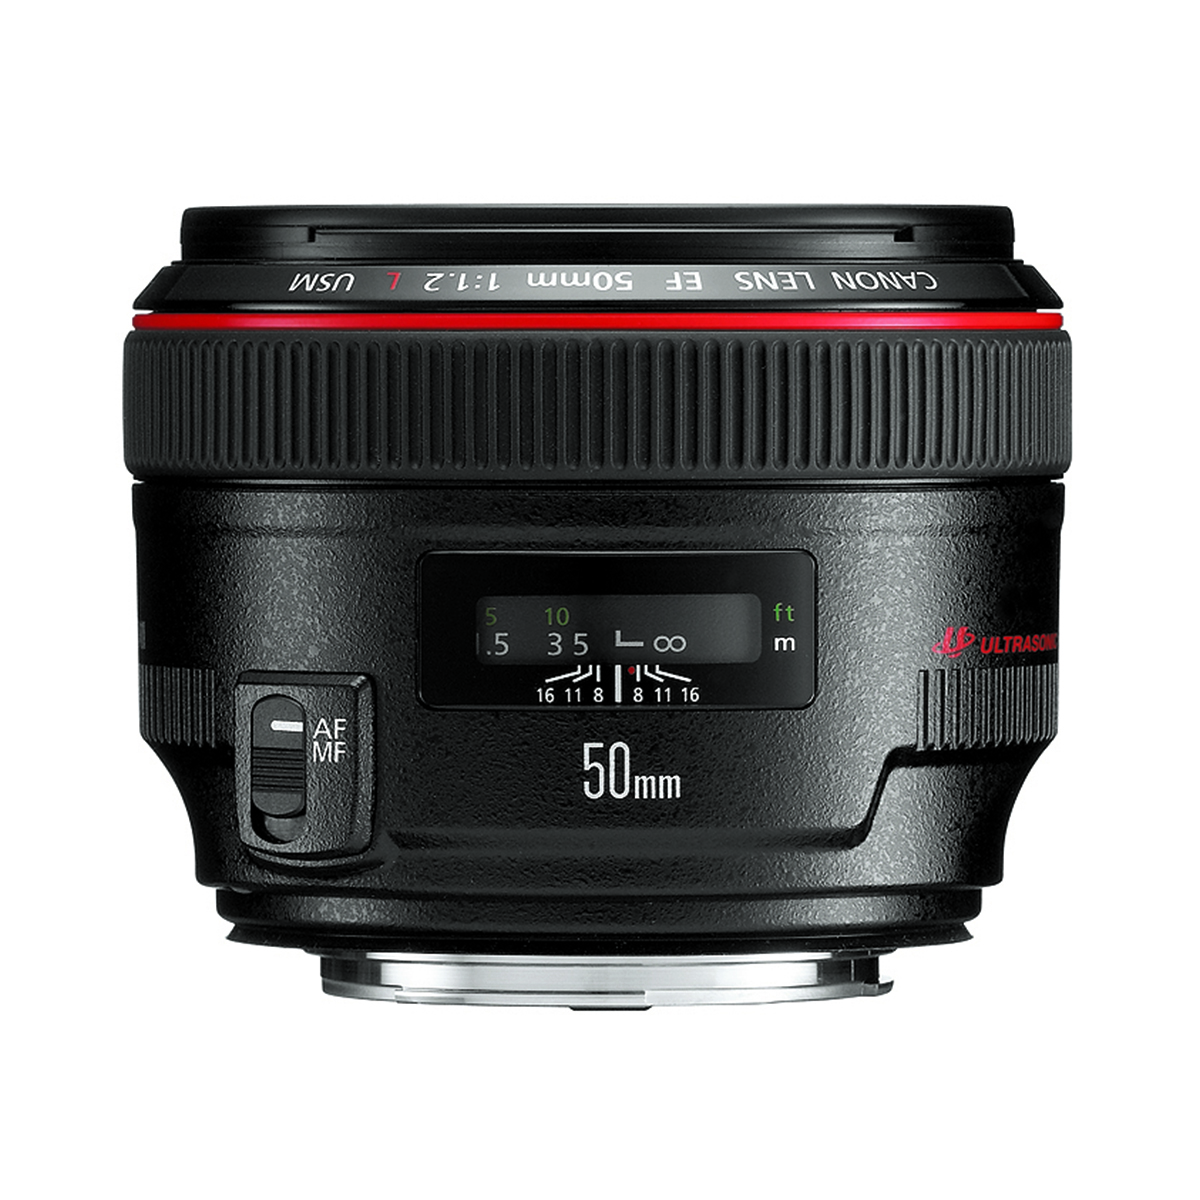 Ống kính Canon EF 50mm f/1.2L USM là người bạn đồng hành của các nhiếp ảnh gia chuyên nghiệp. Với khả năng chụp ảnh sắc nét và độ tương phản cao, mỗi bức ảnh sẽ trở nên sống động hơn bao giờ hết. Hãy cùng khám phá hình ảnh đẹp với ống kính này.